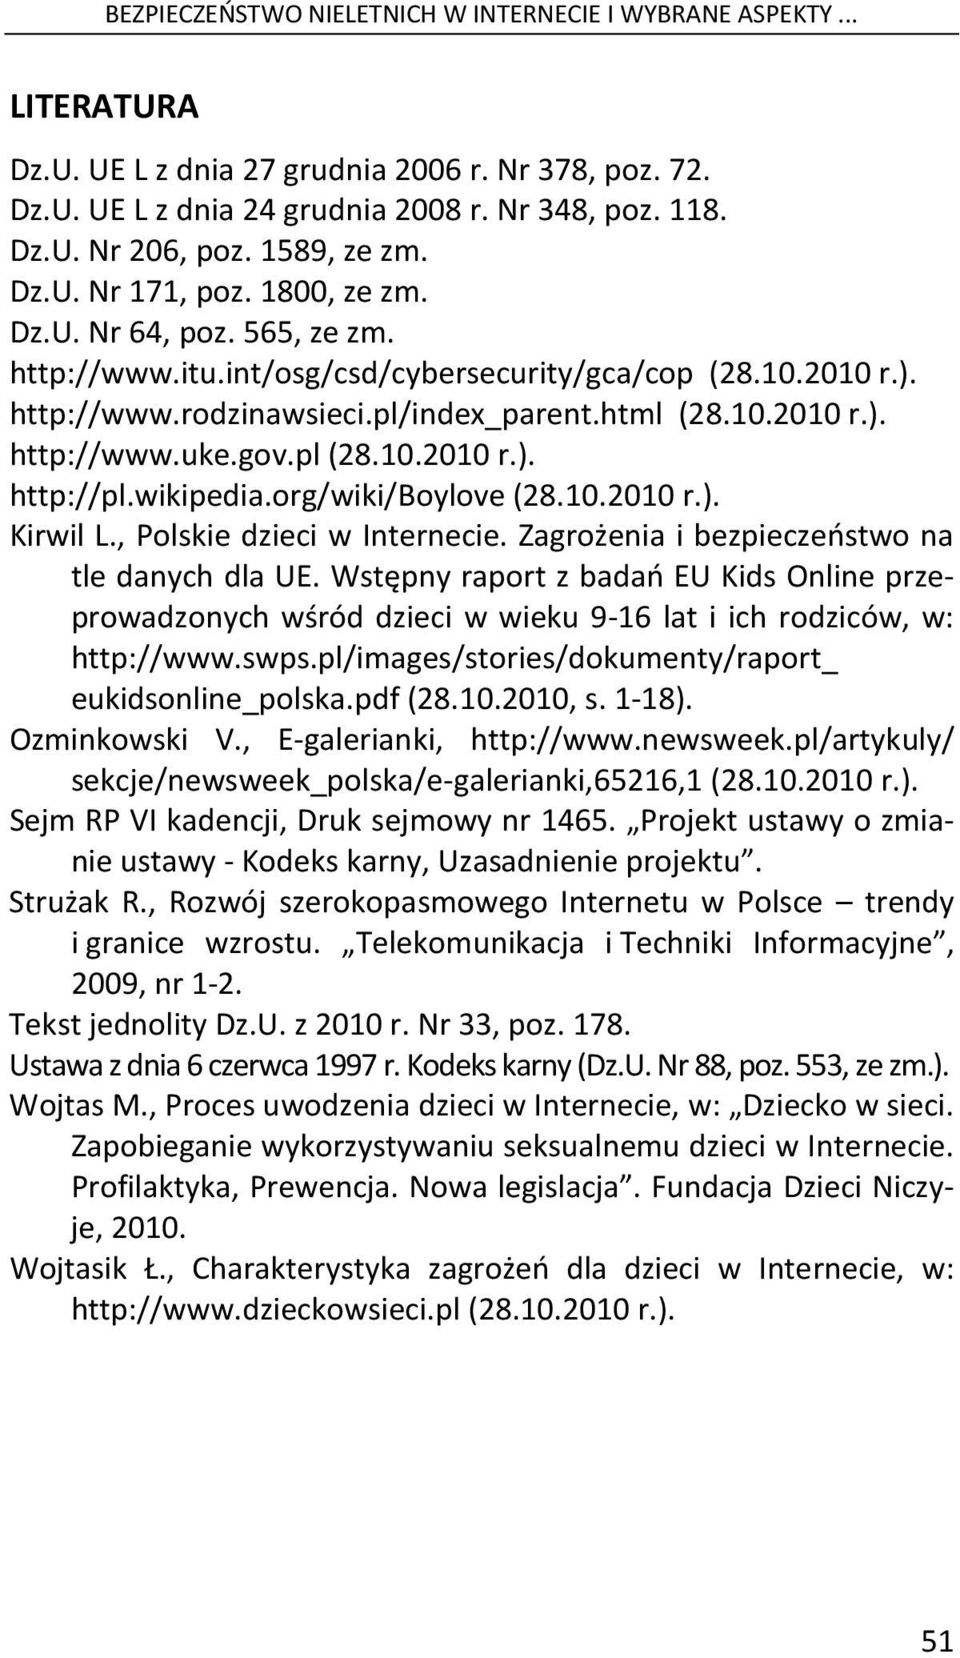 gov.pl (28.10.2010 r.). http://pl.wikipedia.org/wiki/boylove (28.10.2010 r.). Kirwil L., Polskie dzieci w Internecie. Zagrożenia i bezpieczeństwo na tle danych dla UE.